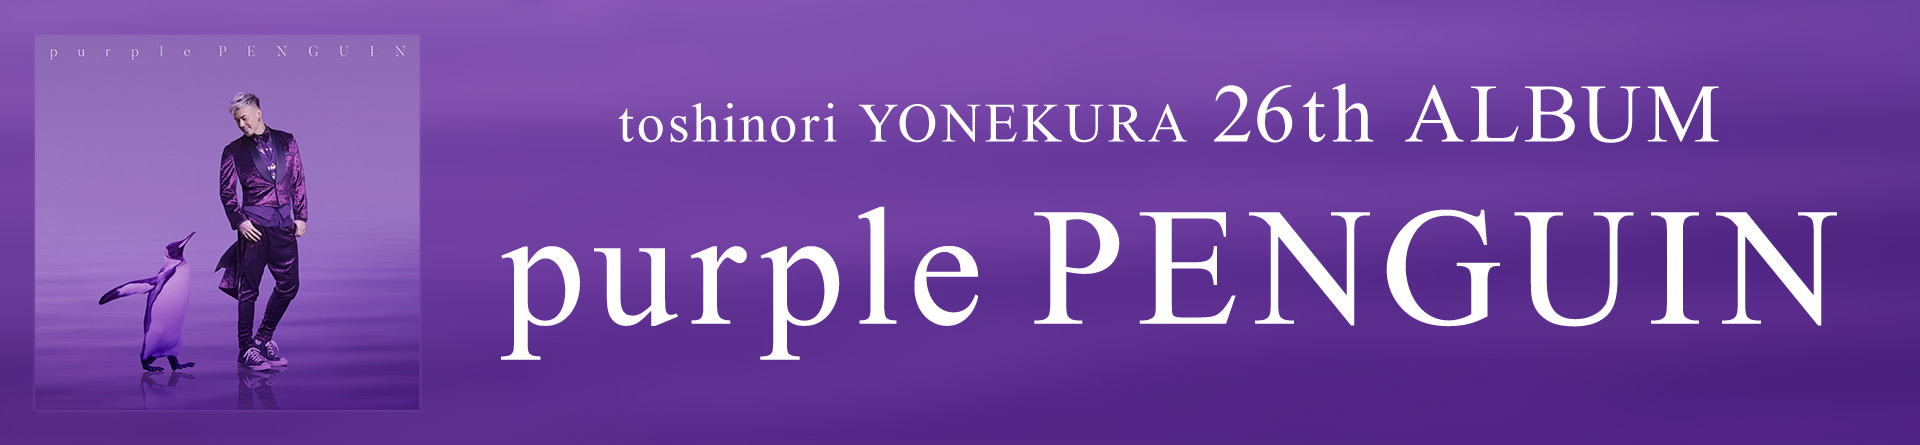 26rh album「purple PENGUIN」